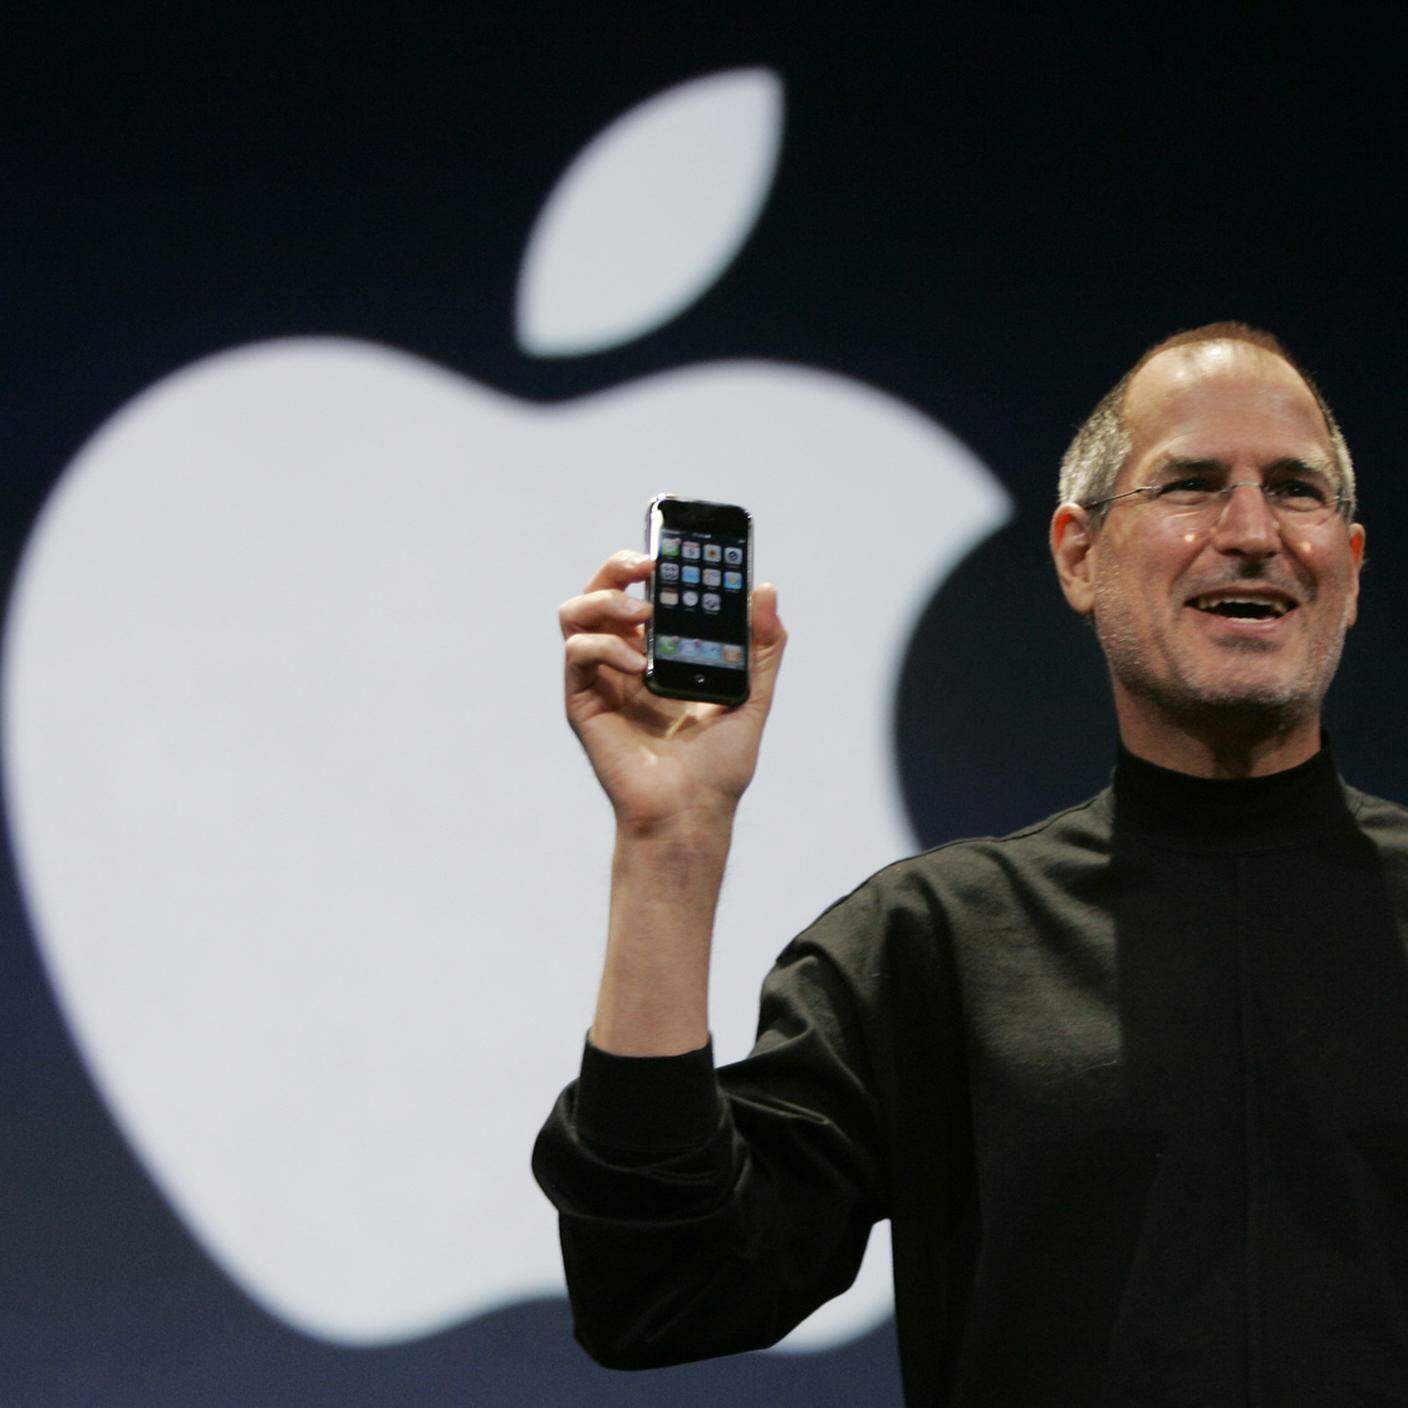 Il nuovo iPhone durante il suo discorso al MacWorld Conference & Expo di San Francisco, martedì 9 gennaio 2007